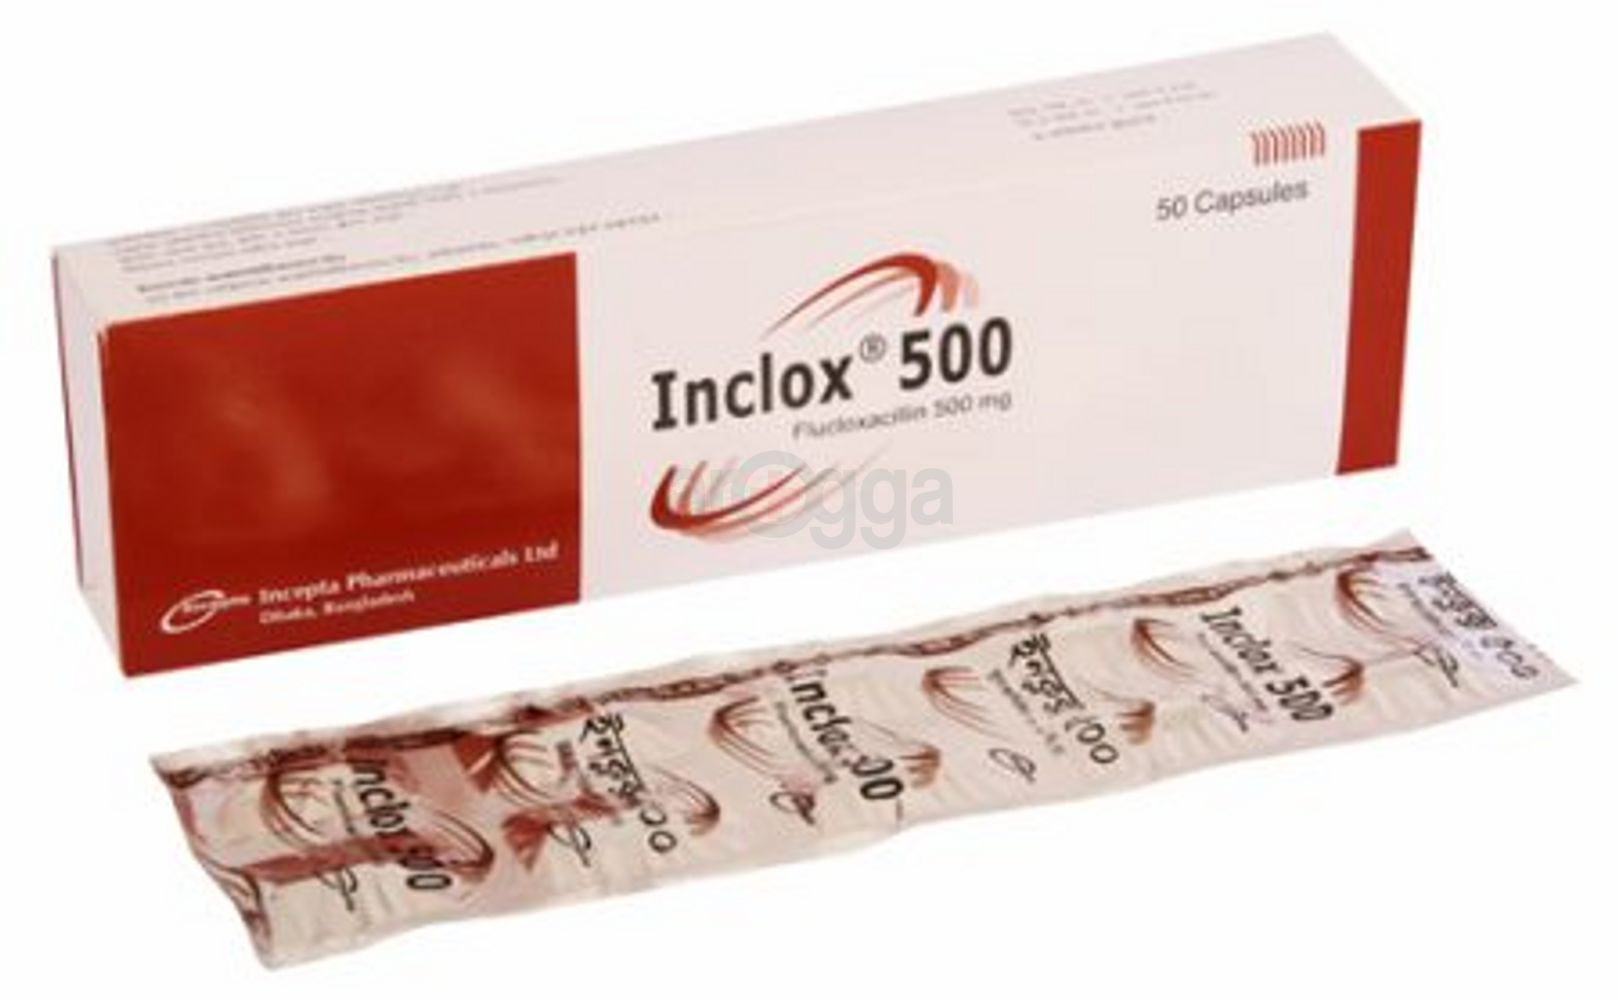 Inclox 500